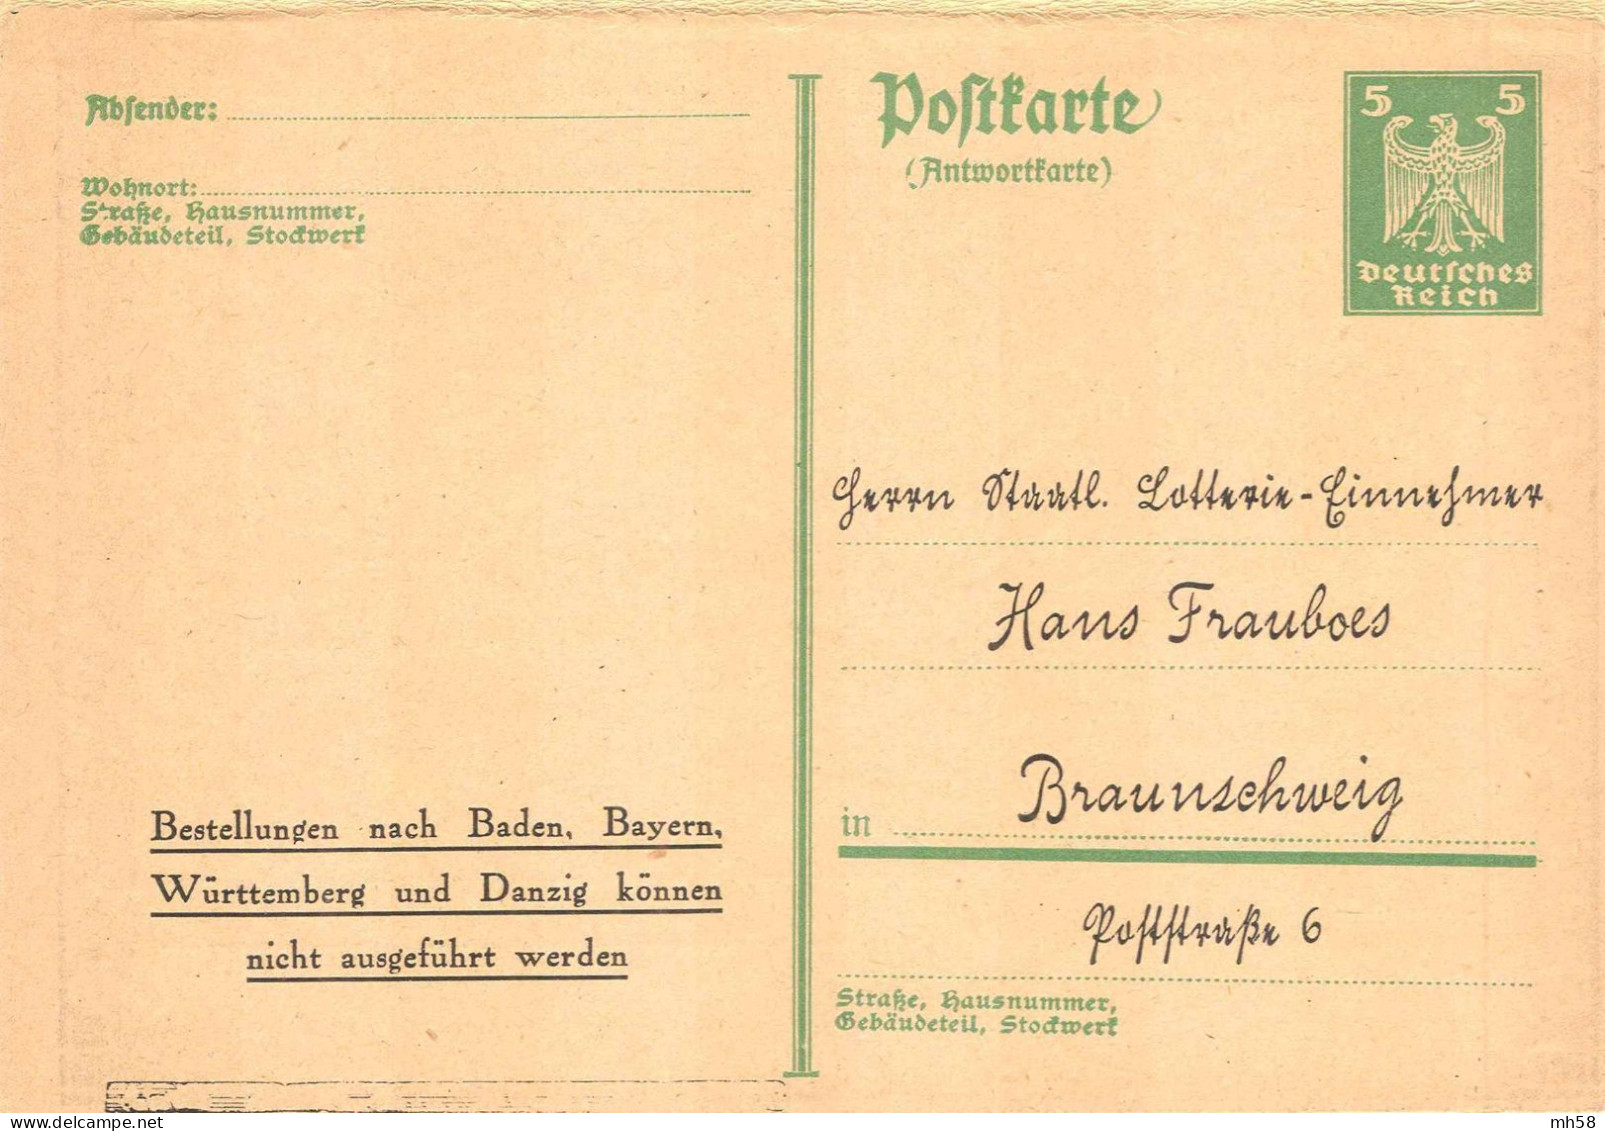 ALLEMAGNE REICH - Entier Privé Réponse Payée / Ganzsache Privat Antwortpostkarte - Lotterie Frauboes Braunschweig - Postkarten